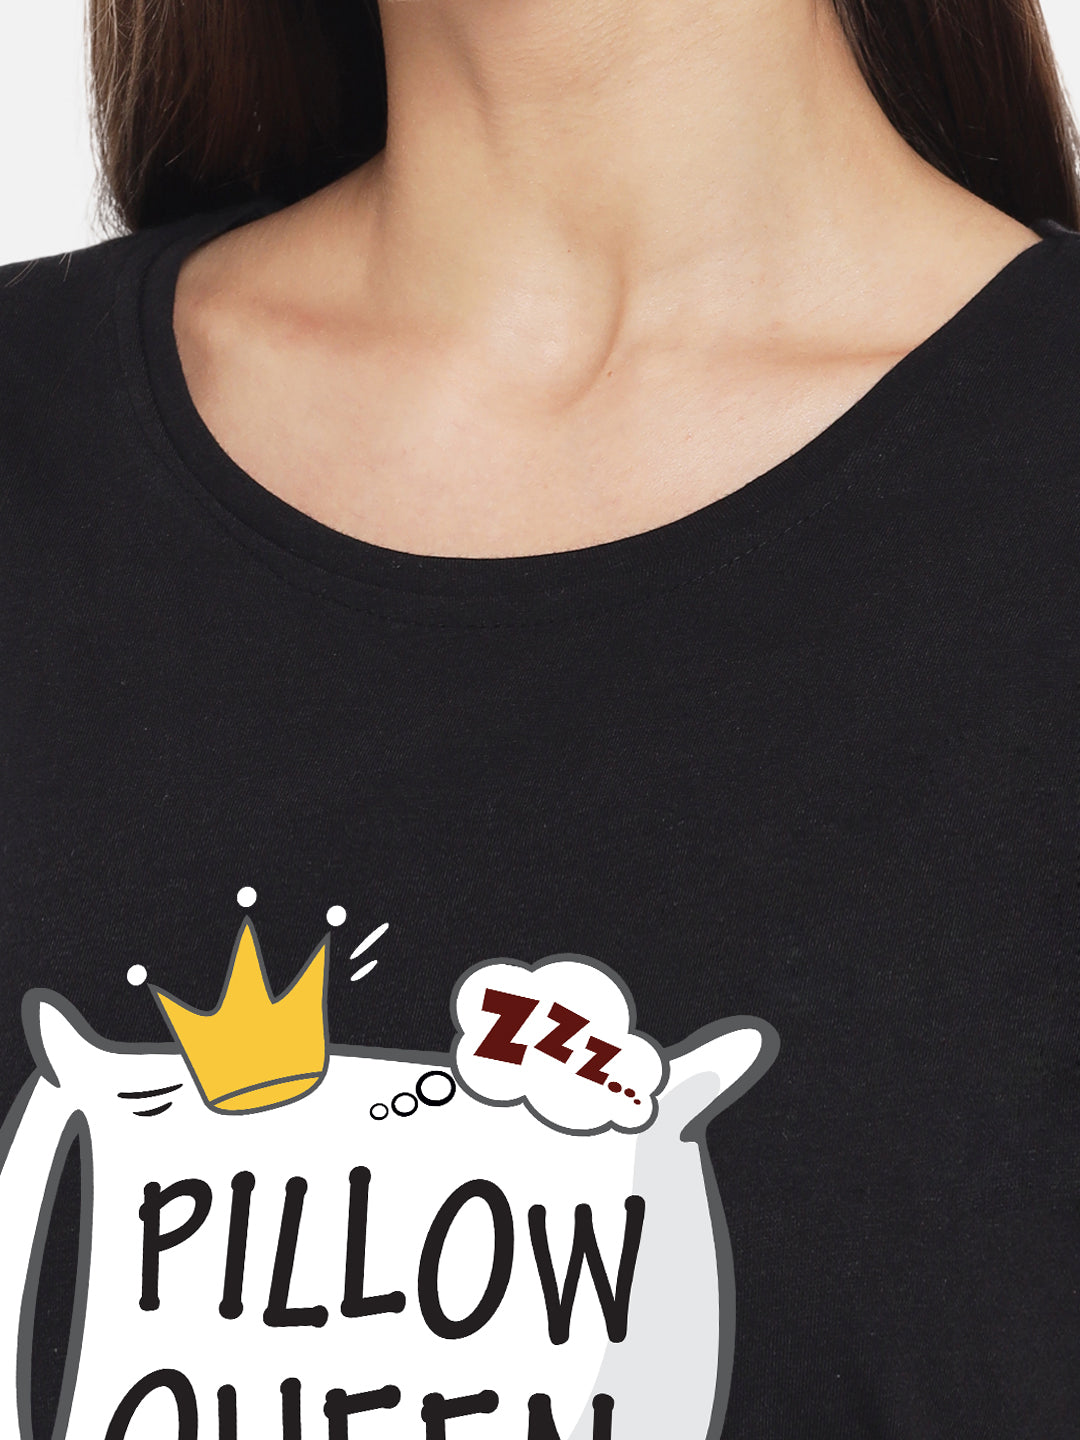 Pillow Queen